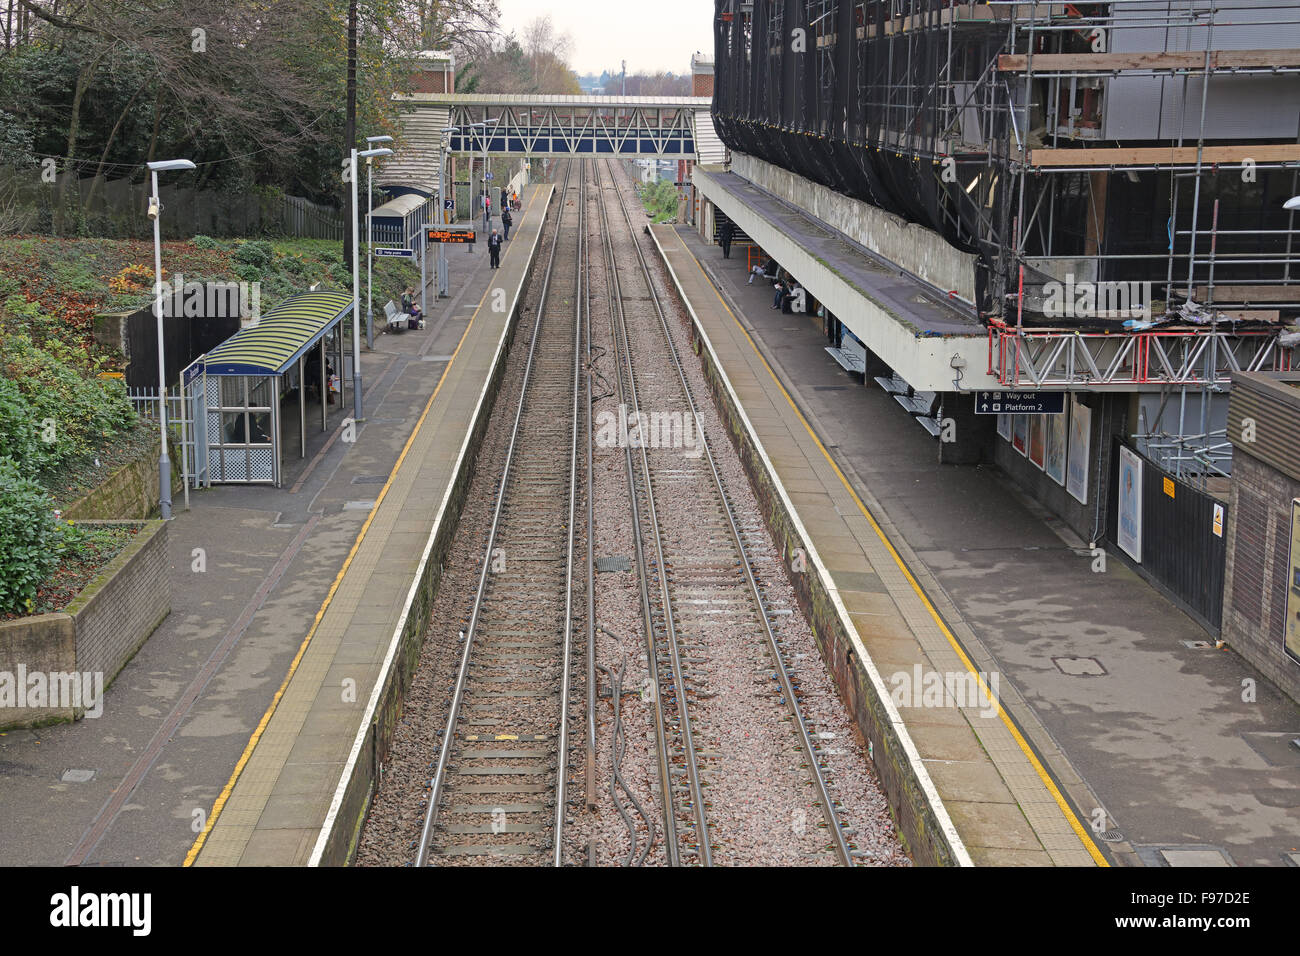 Él vista a lo largo de las plataformas hacia la señal de tercer carril las líneas electrificadas con pasajeros que esperan en la plataforma. Foto de stock